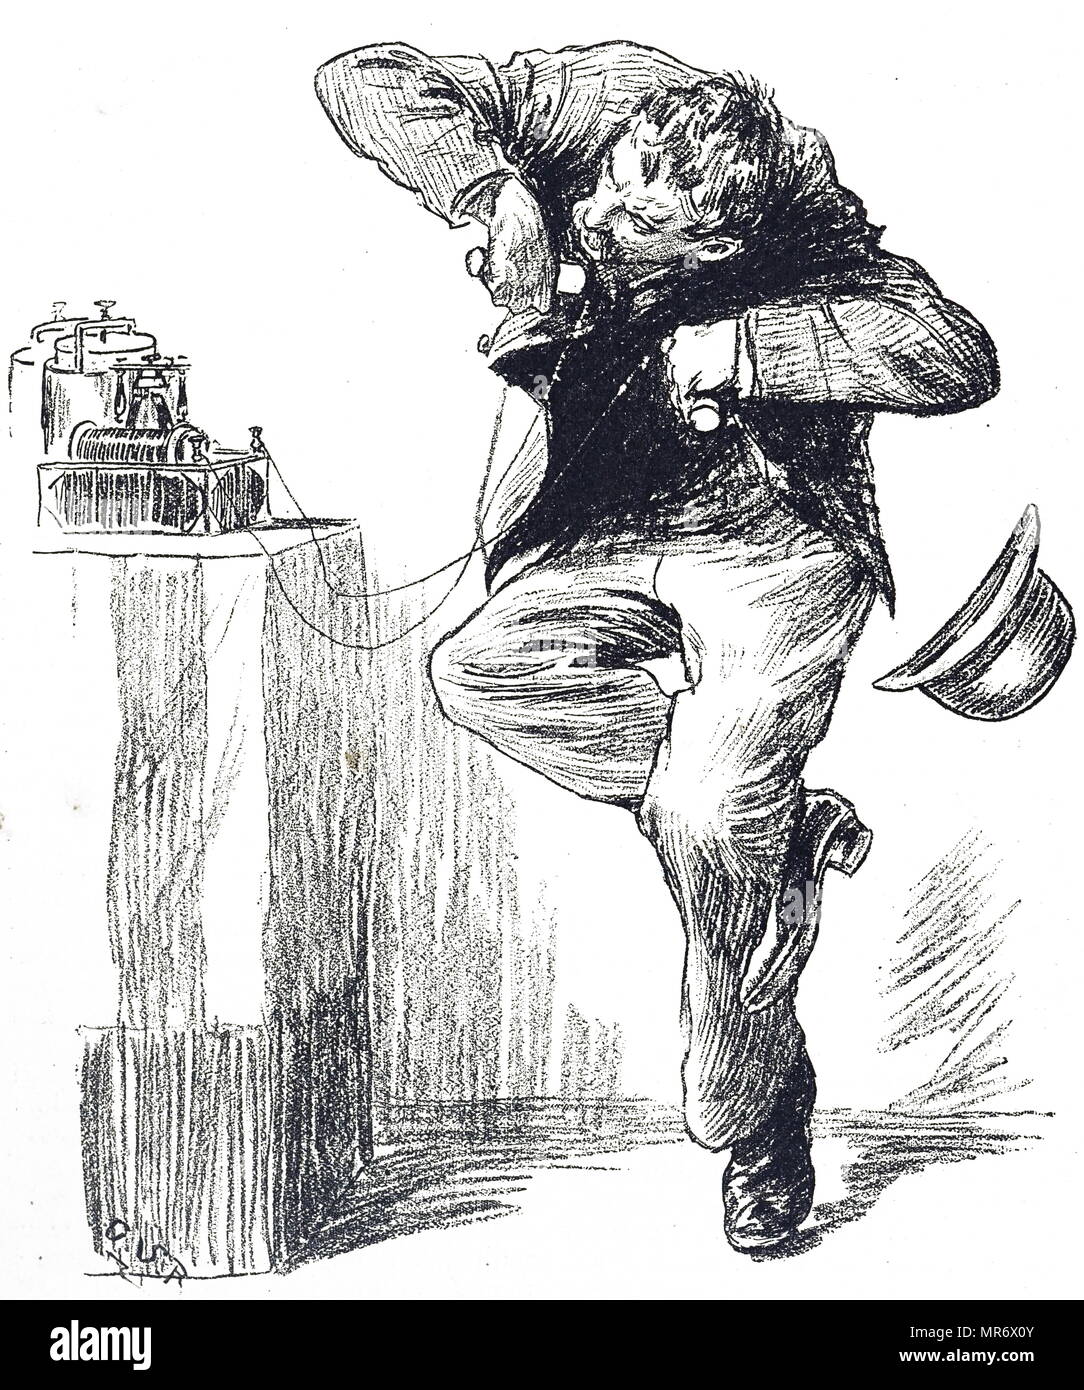 Incisione raffigurante un uomo avente un giro sulla batteria galvanica che scosse la persona in possesso di esso. Datata del XIX secolo Foto Stock